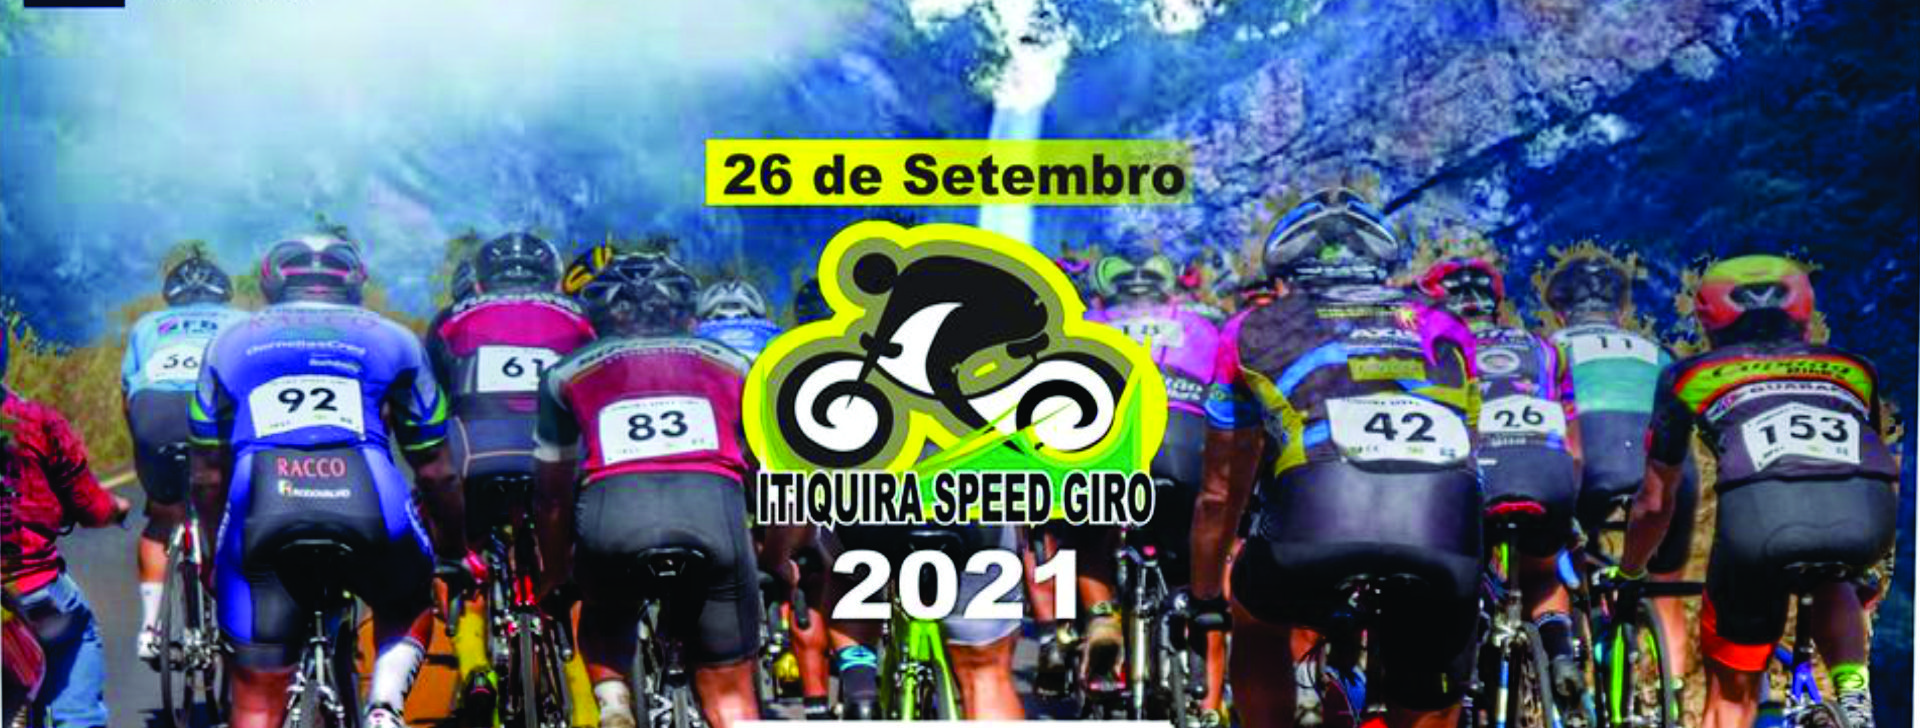 itiquira-speed-giro-2021-banner